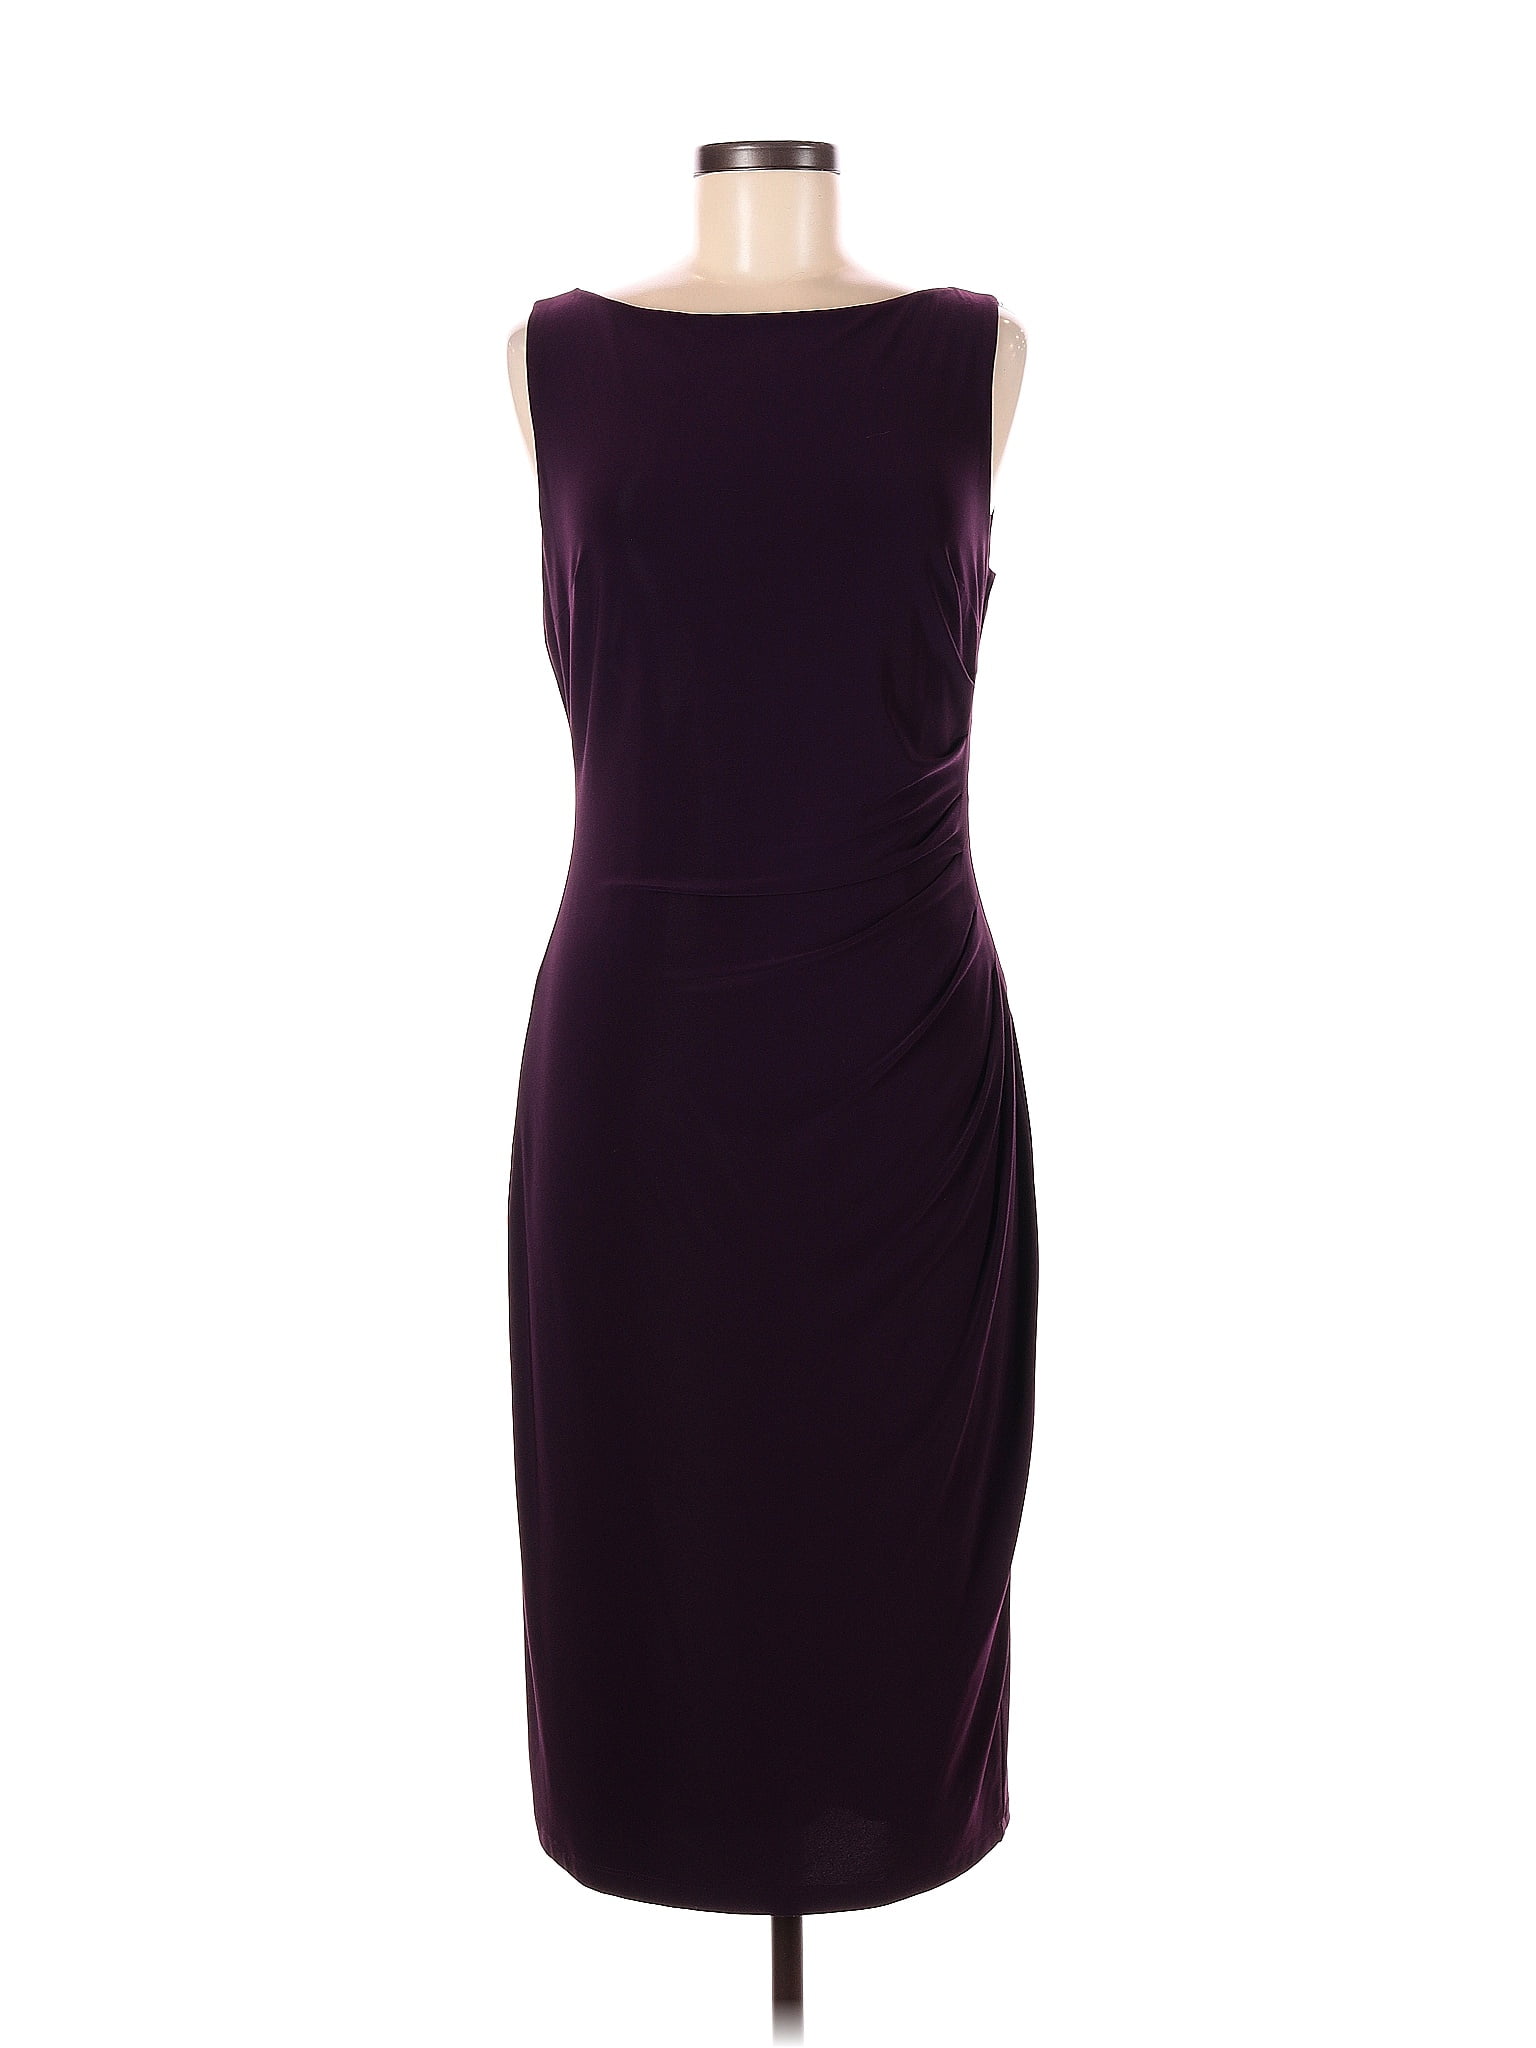 Lauren by Ralph Lauren Solid Purple Burgundy Casual Dress Size 8 - 75% ...